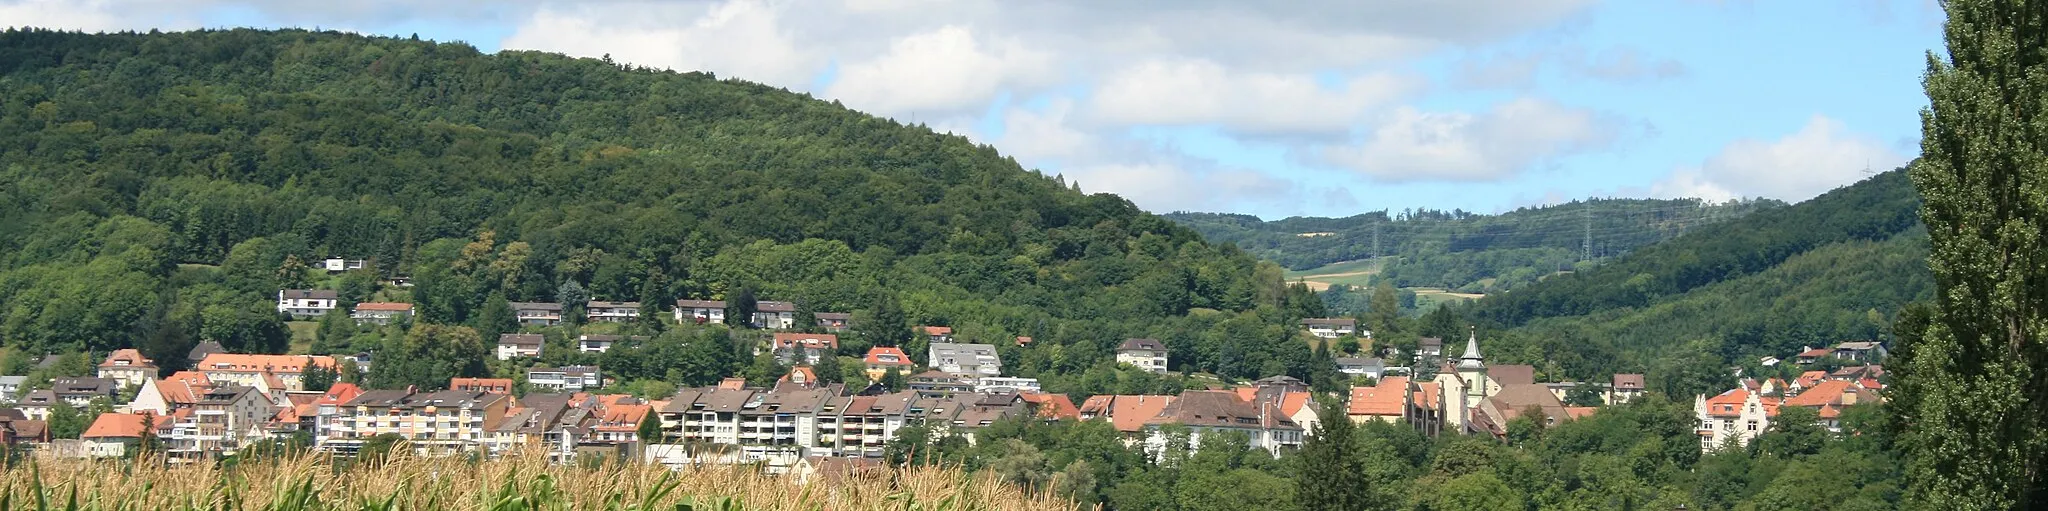 Imagen de Freiburg